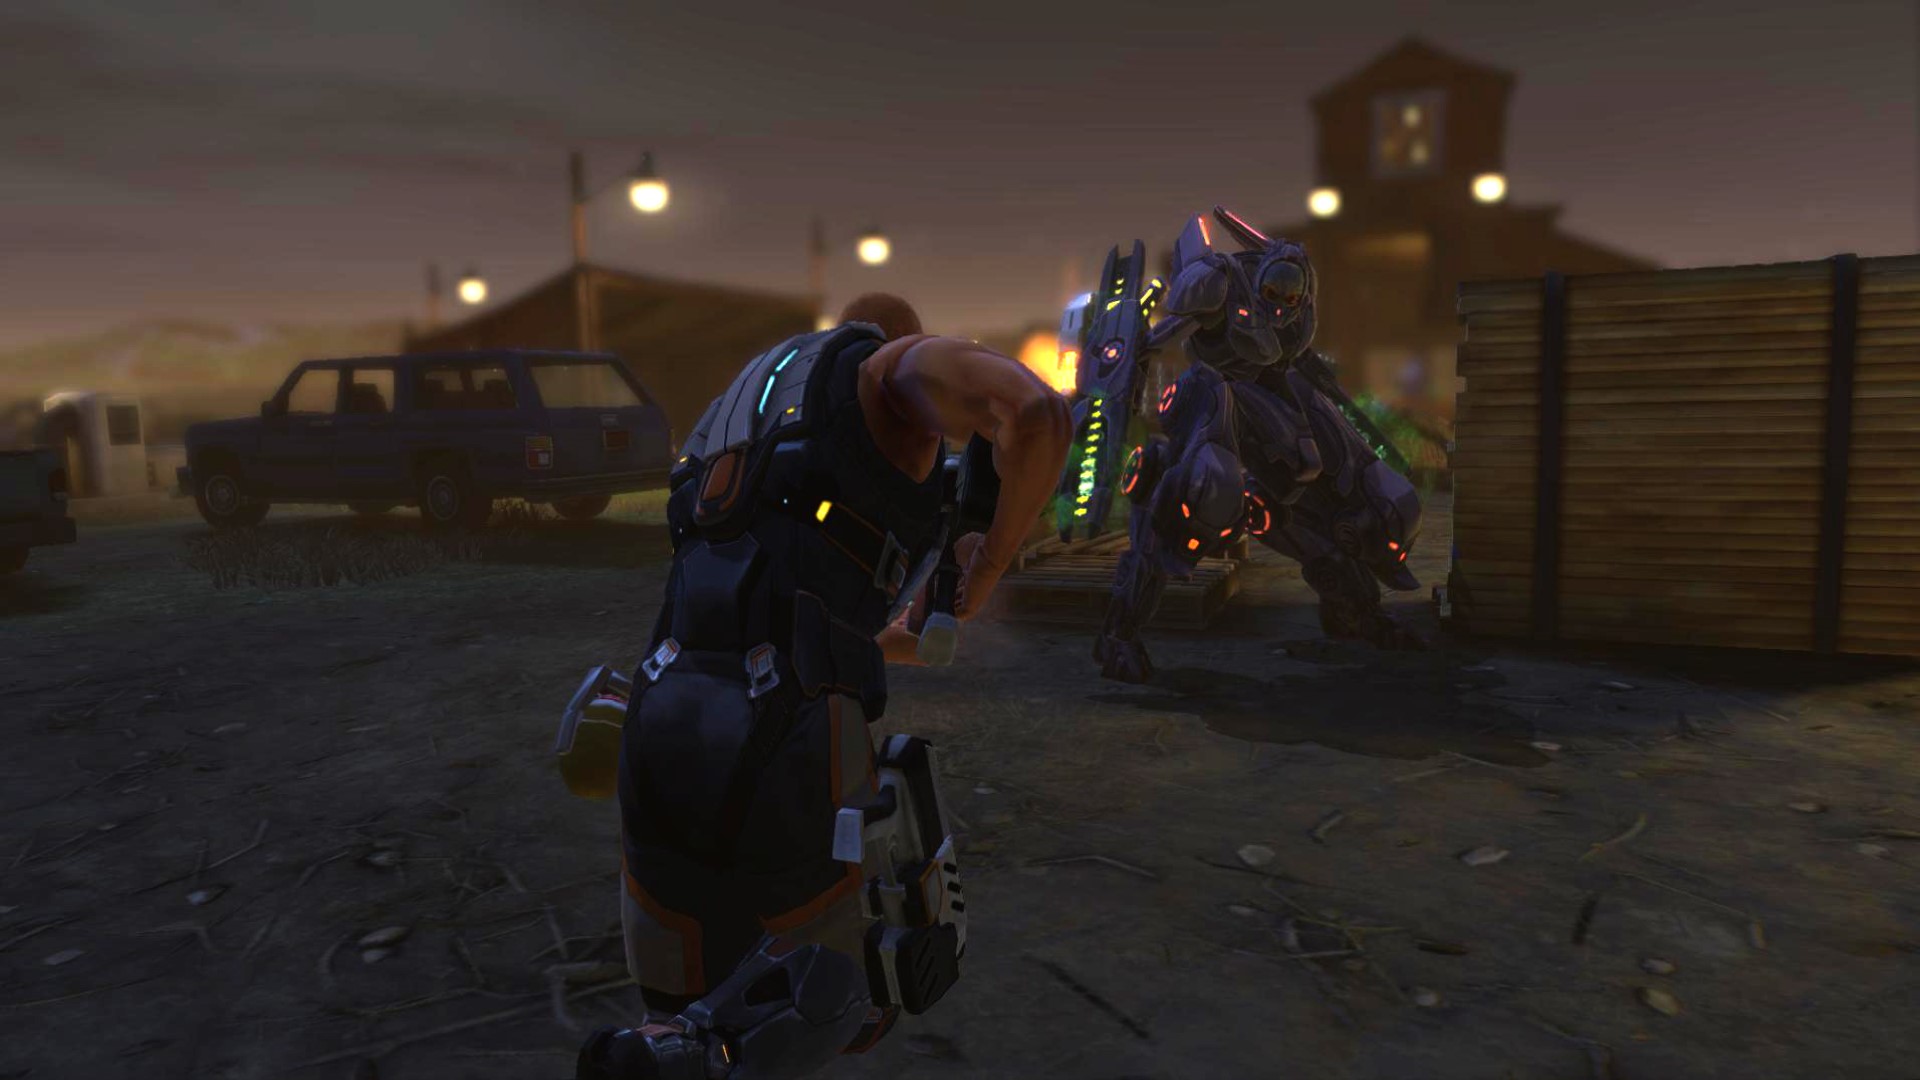 Los mejores juegos de estrategia móvil: XCOM: Enemigo interior. La imagen muestra a dos personas en armadura futurista sosteniendo armas